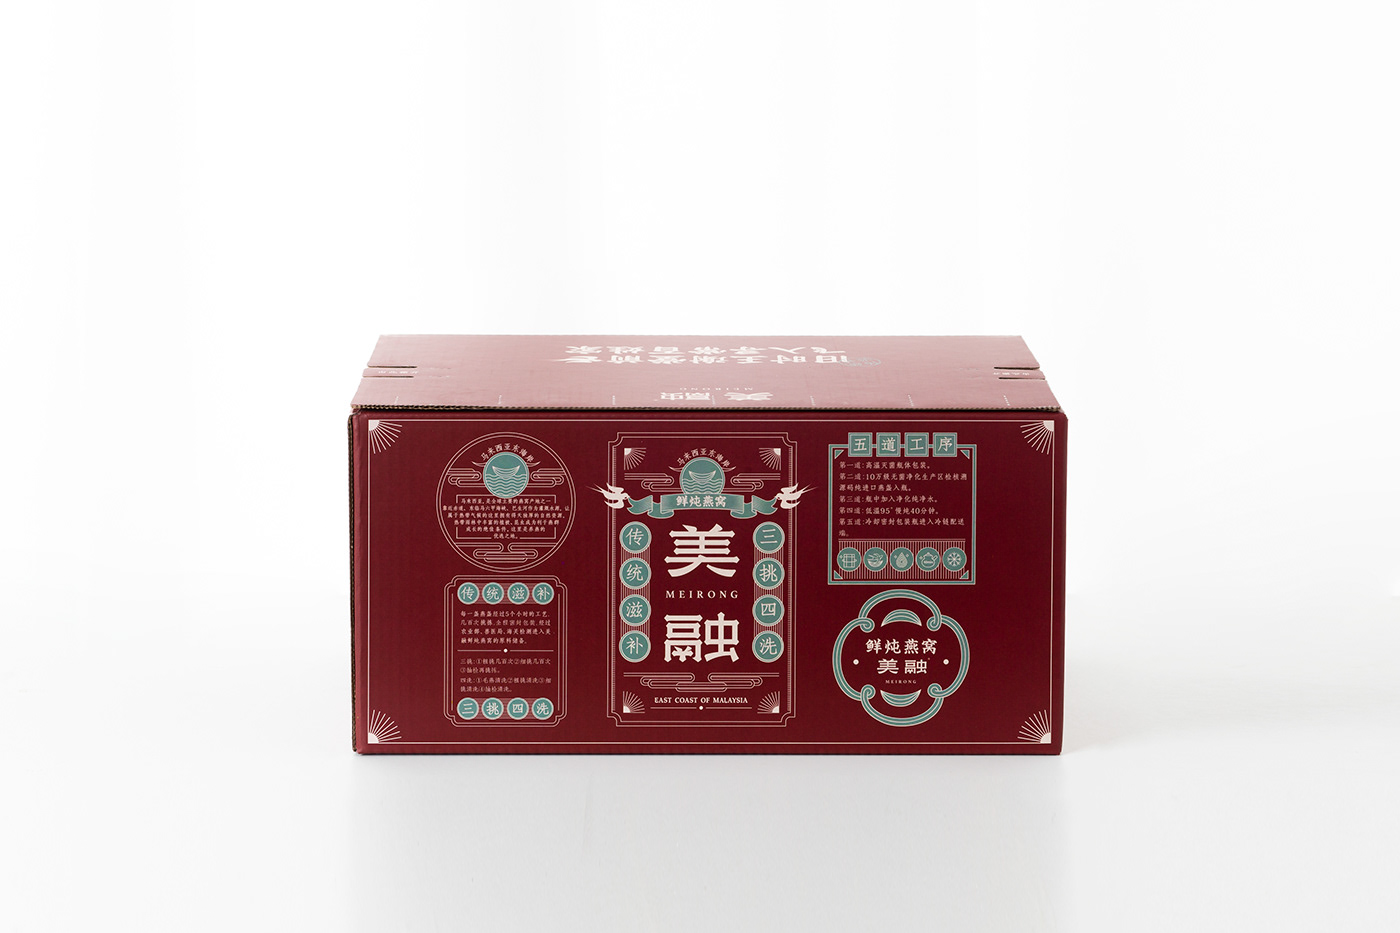 燕窝 Cubilose brand 包装 logo branding  package Packaging china Food 